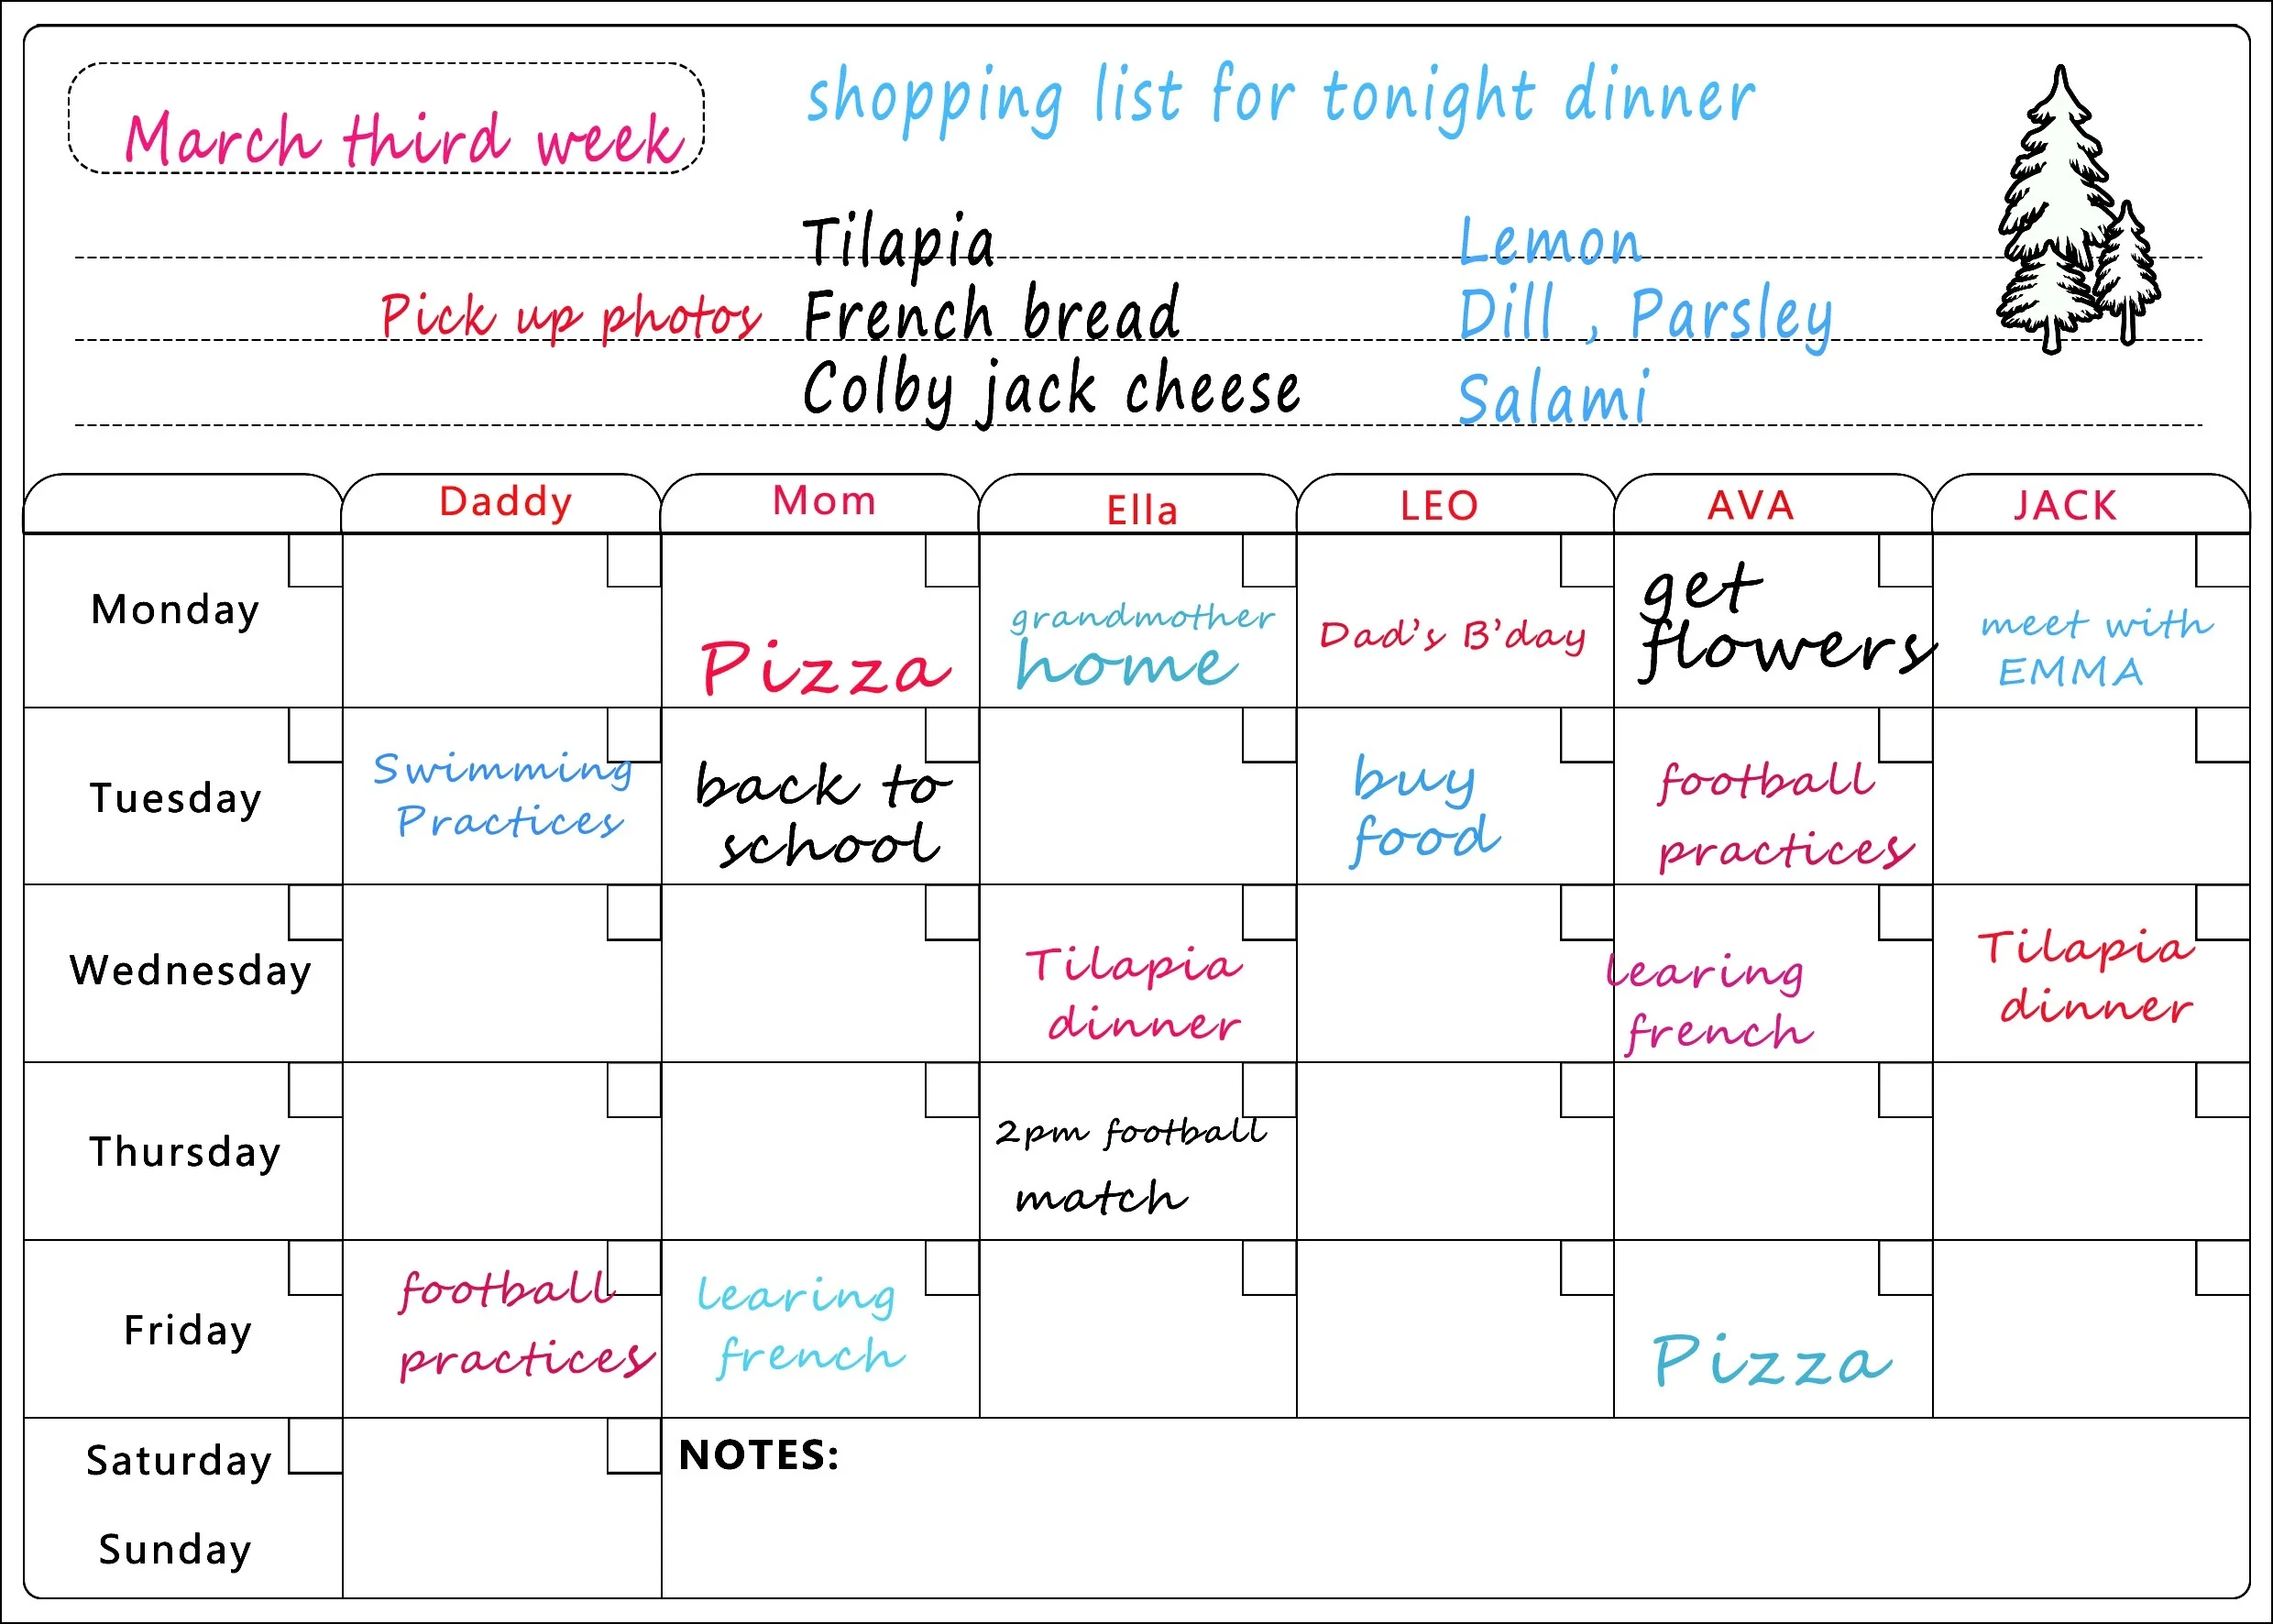 Календарь сухого стирания-A3 Магнитный ЕЖЕНЕДЕЛЬНЫЙ КАЛЕНДАРЬ сухого стирания для холодильника-список продуктов и доска меню недели для холодильника